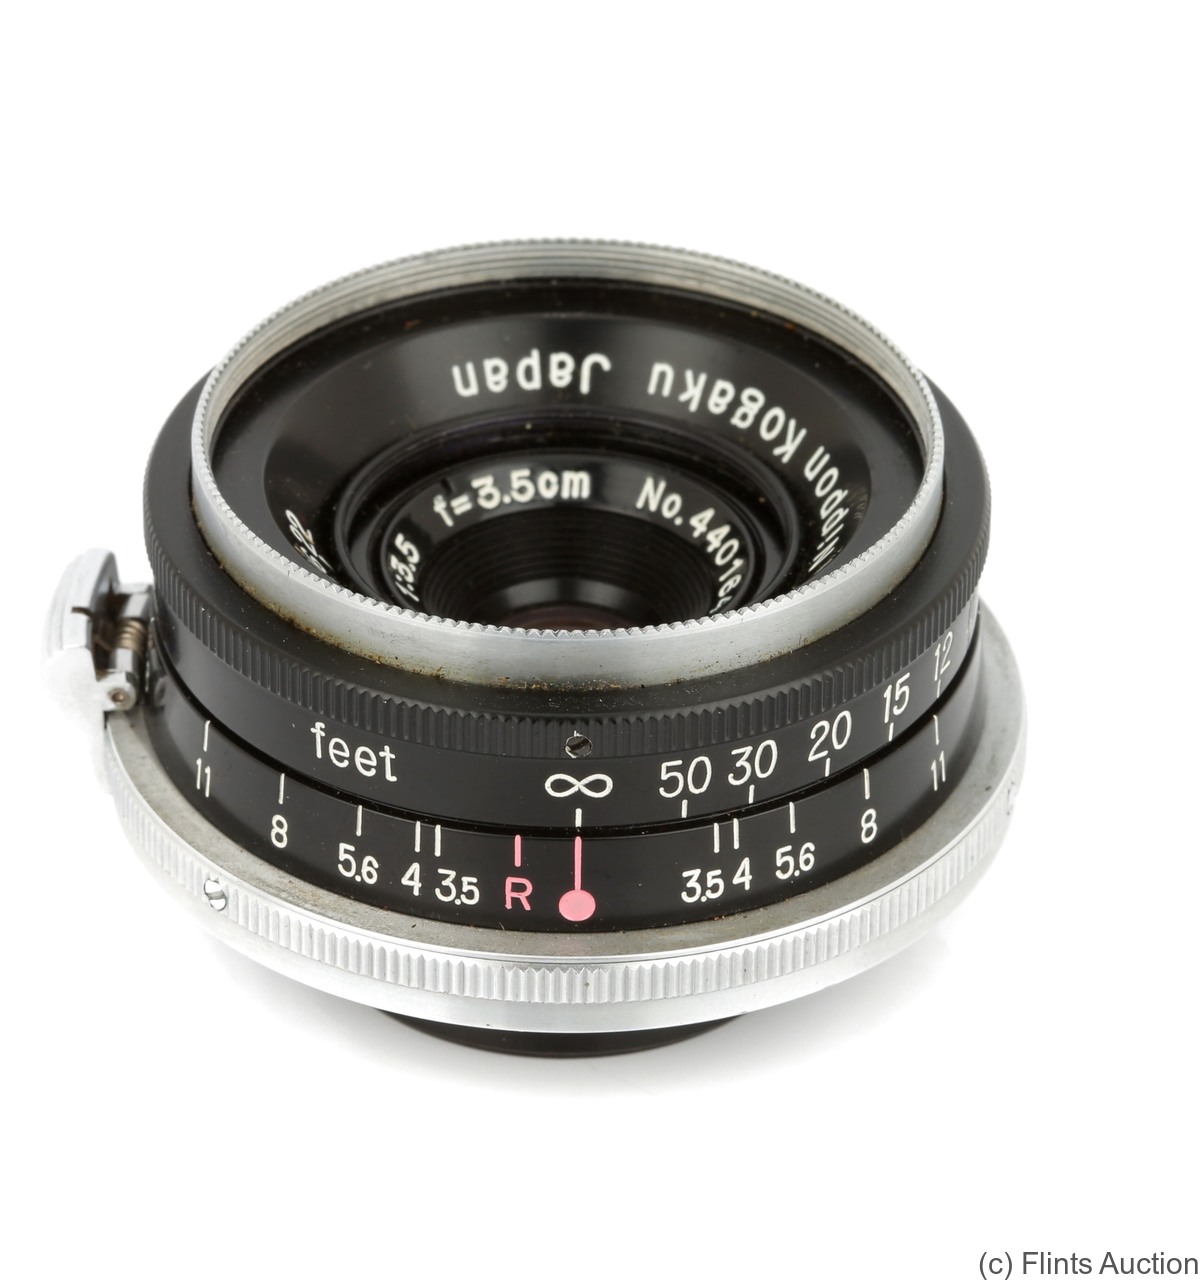 Nikon: 35mm (3.5cm) f3.5 W-Nikkor C (BM, black) camera